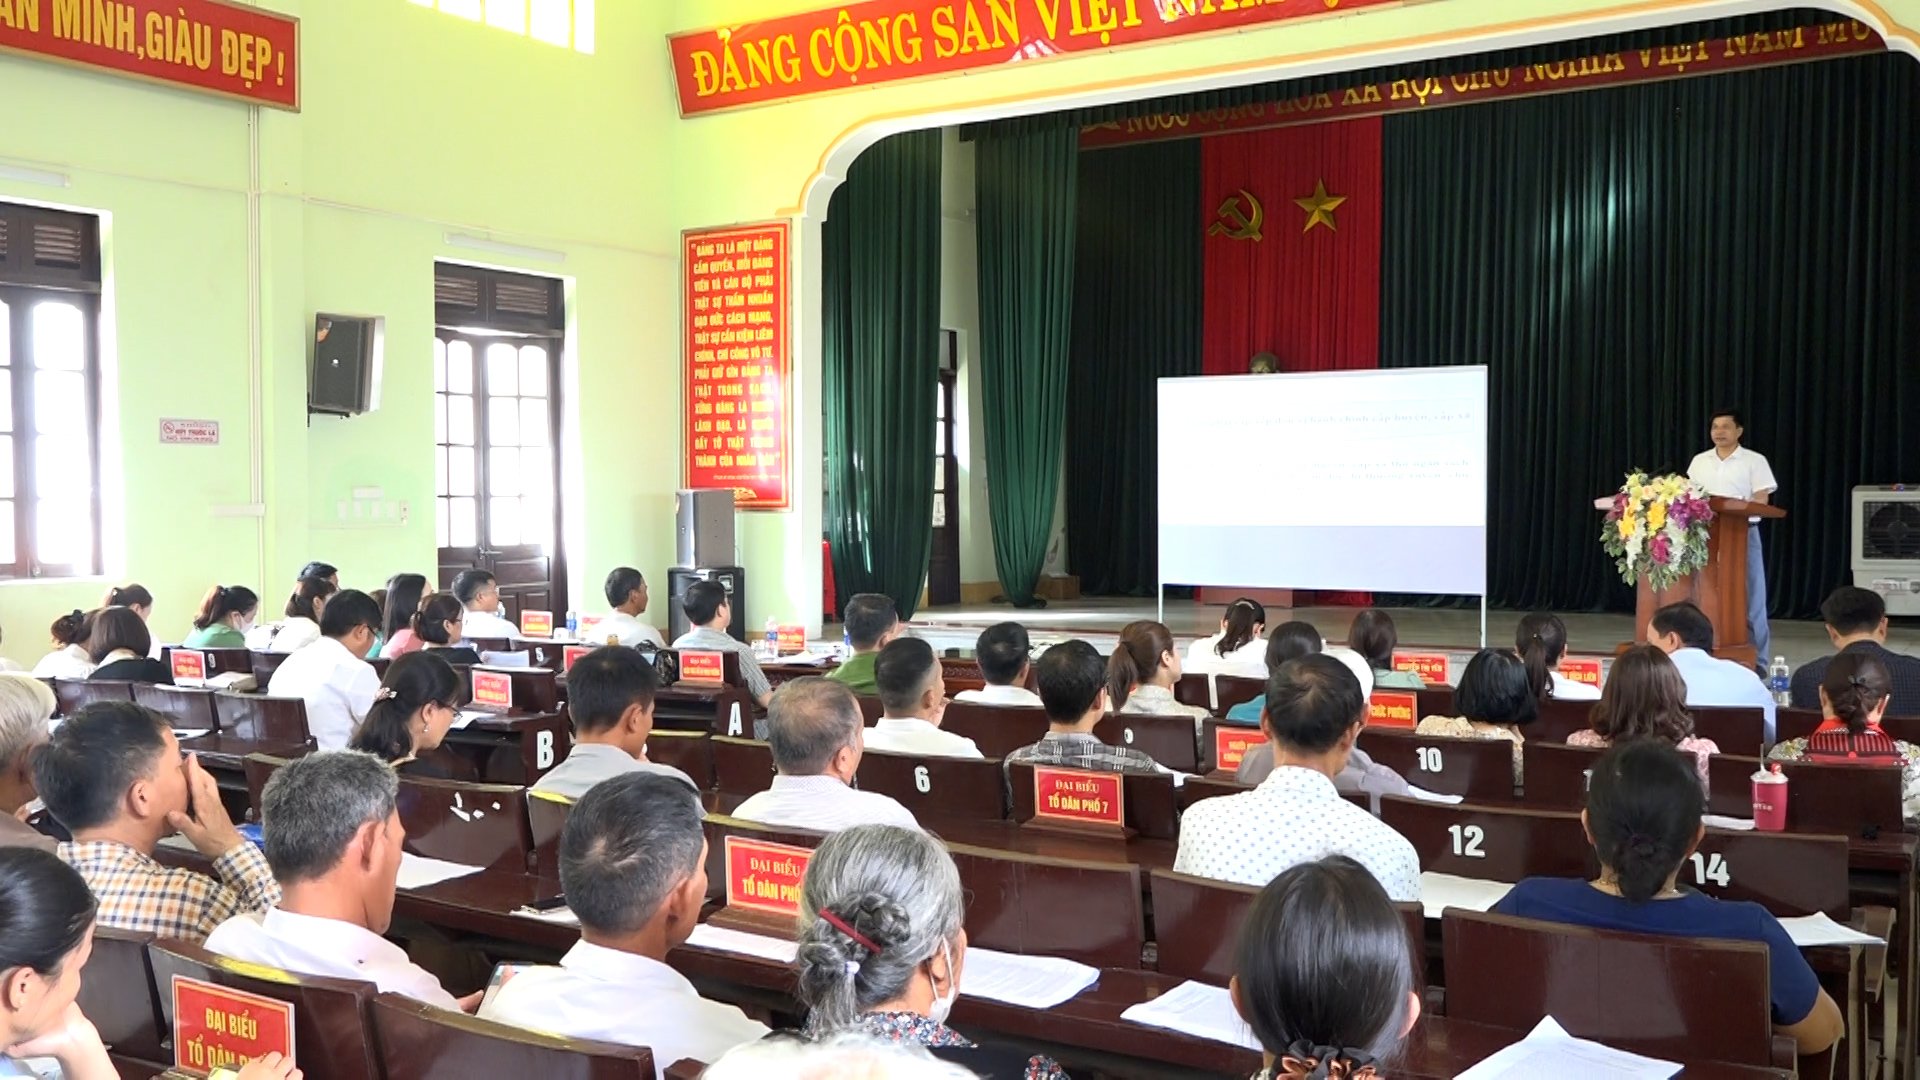 Đảng uỷ phường Tân Bình tổ chức Hội nghị quán triệt, triển khai công tác sắp xếp đơn vị hành chính cấp huyện, cấp xã giai đoạn 2023 - 2030 trên địa bàn thành phố